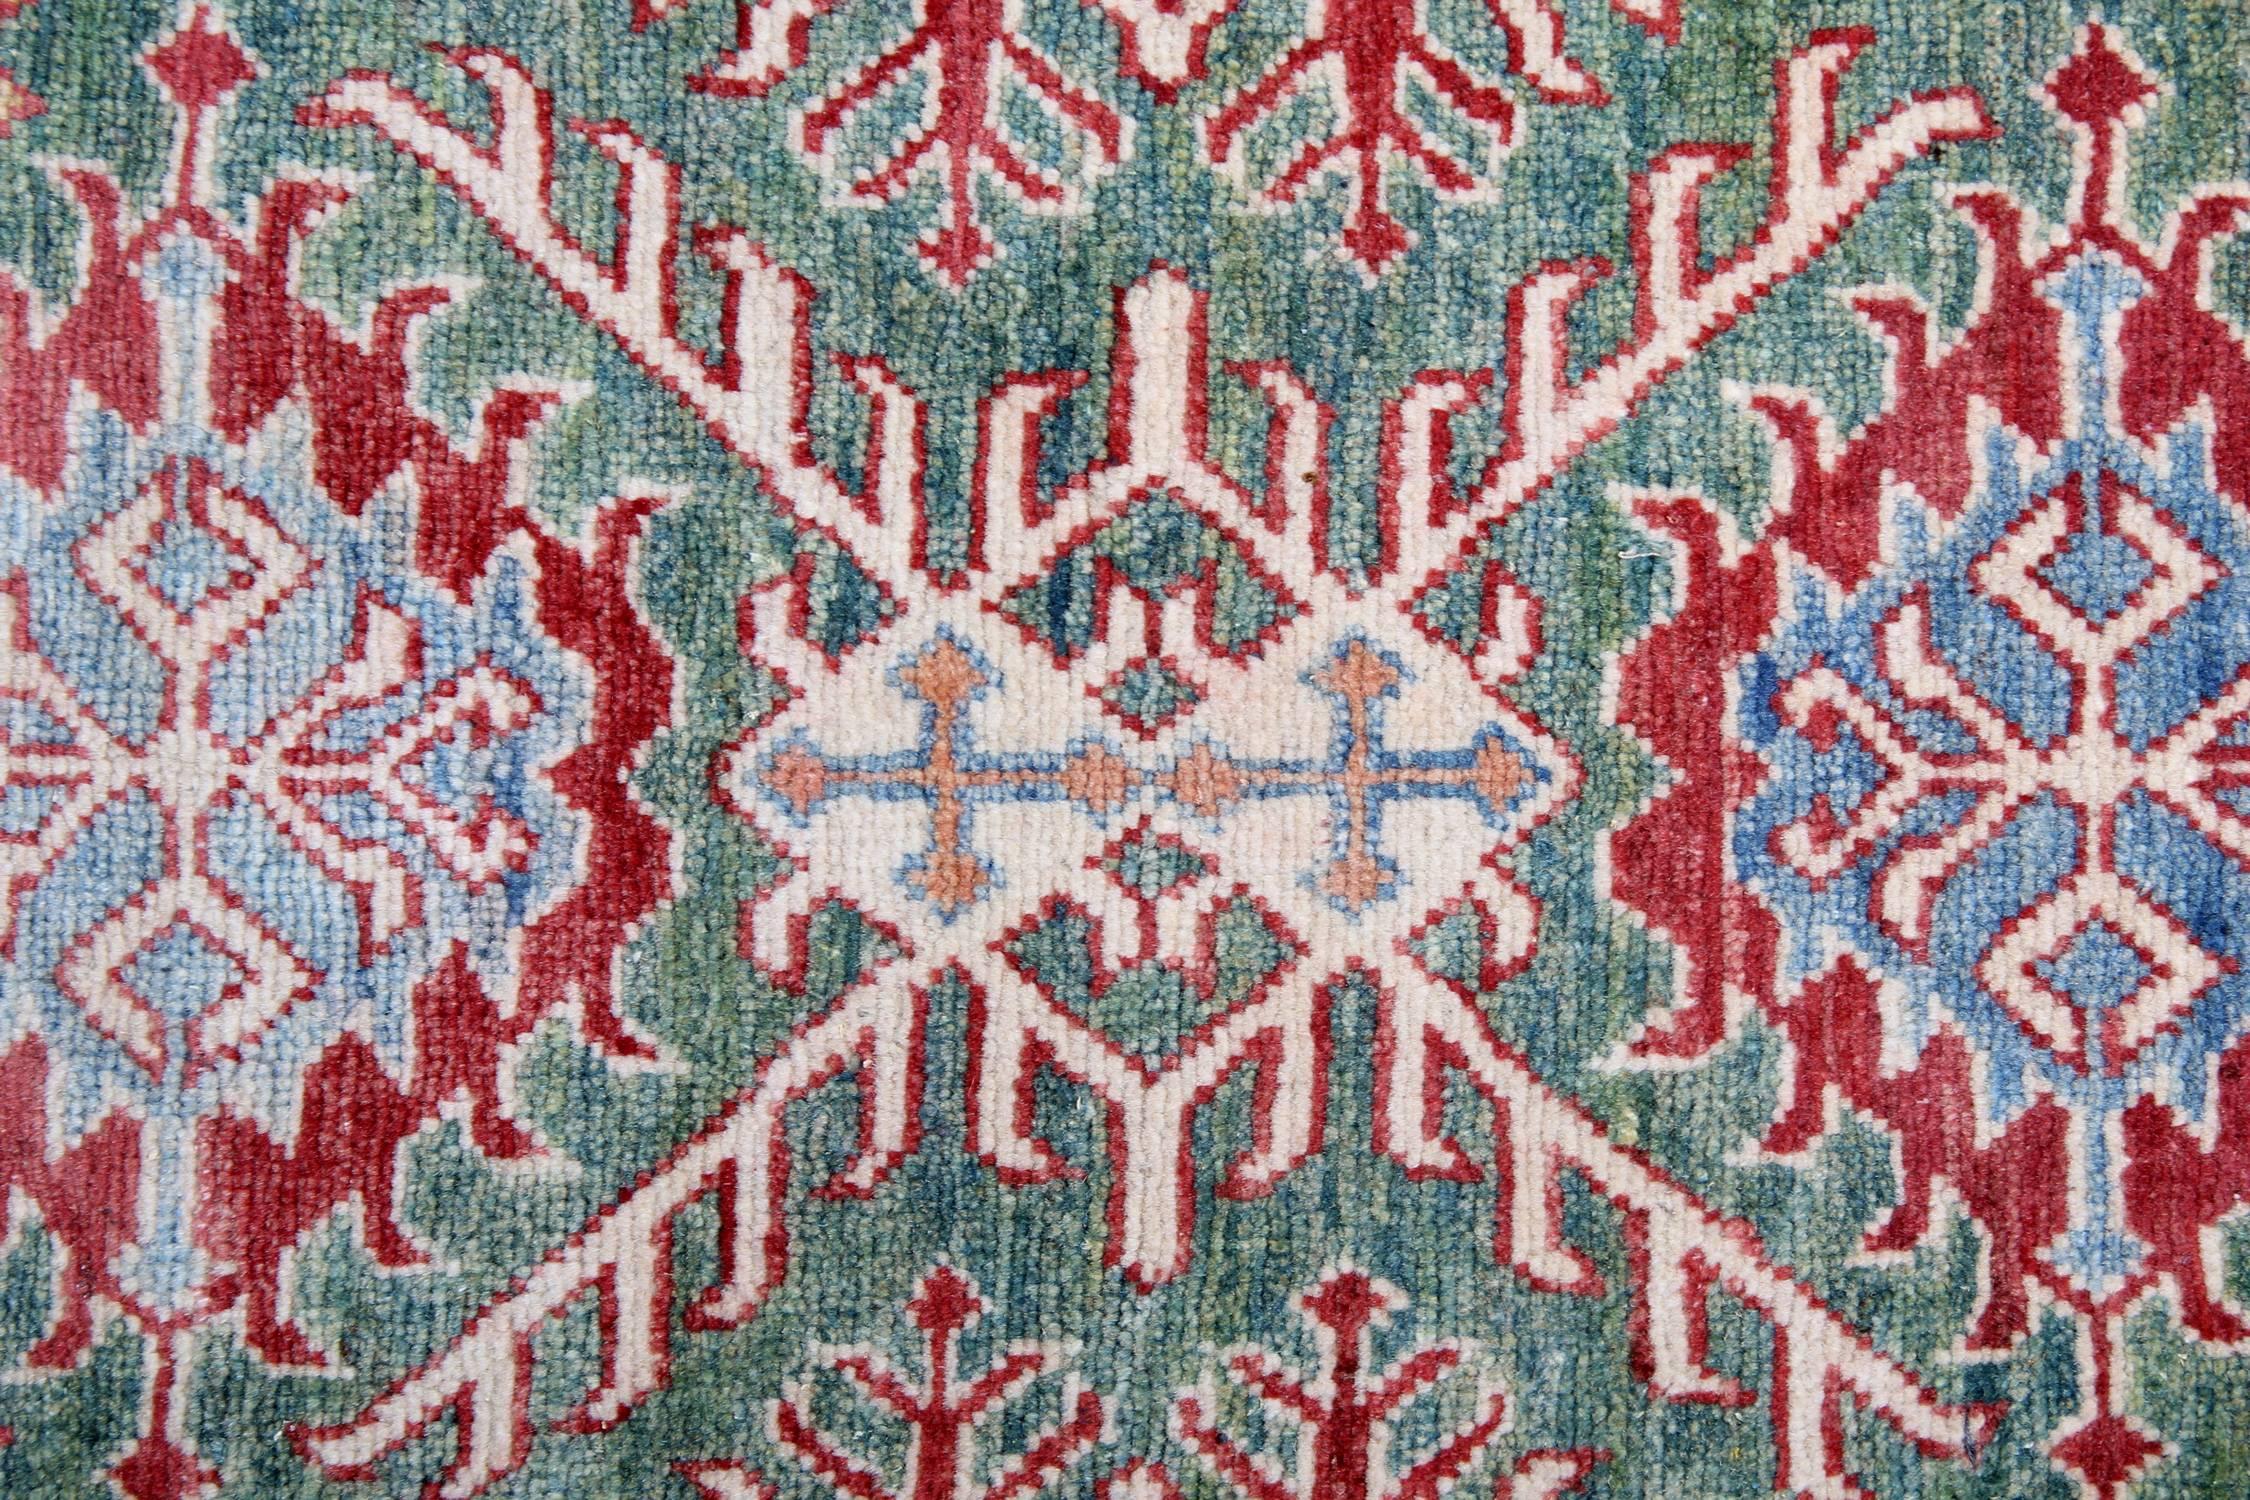 Kazak Handmade Carpet Green Geometric Rug, Living Room Rugs for Sale 68 x 100 cm For Sale